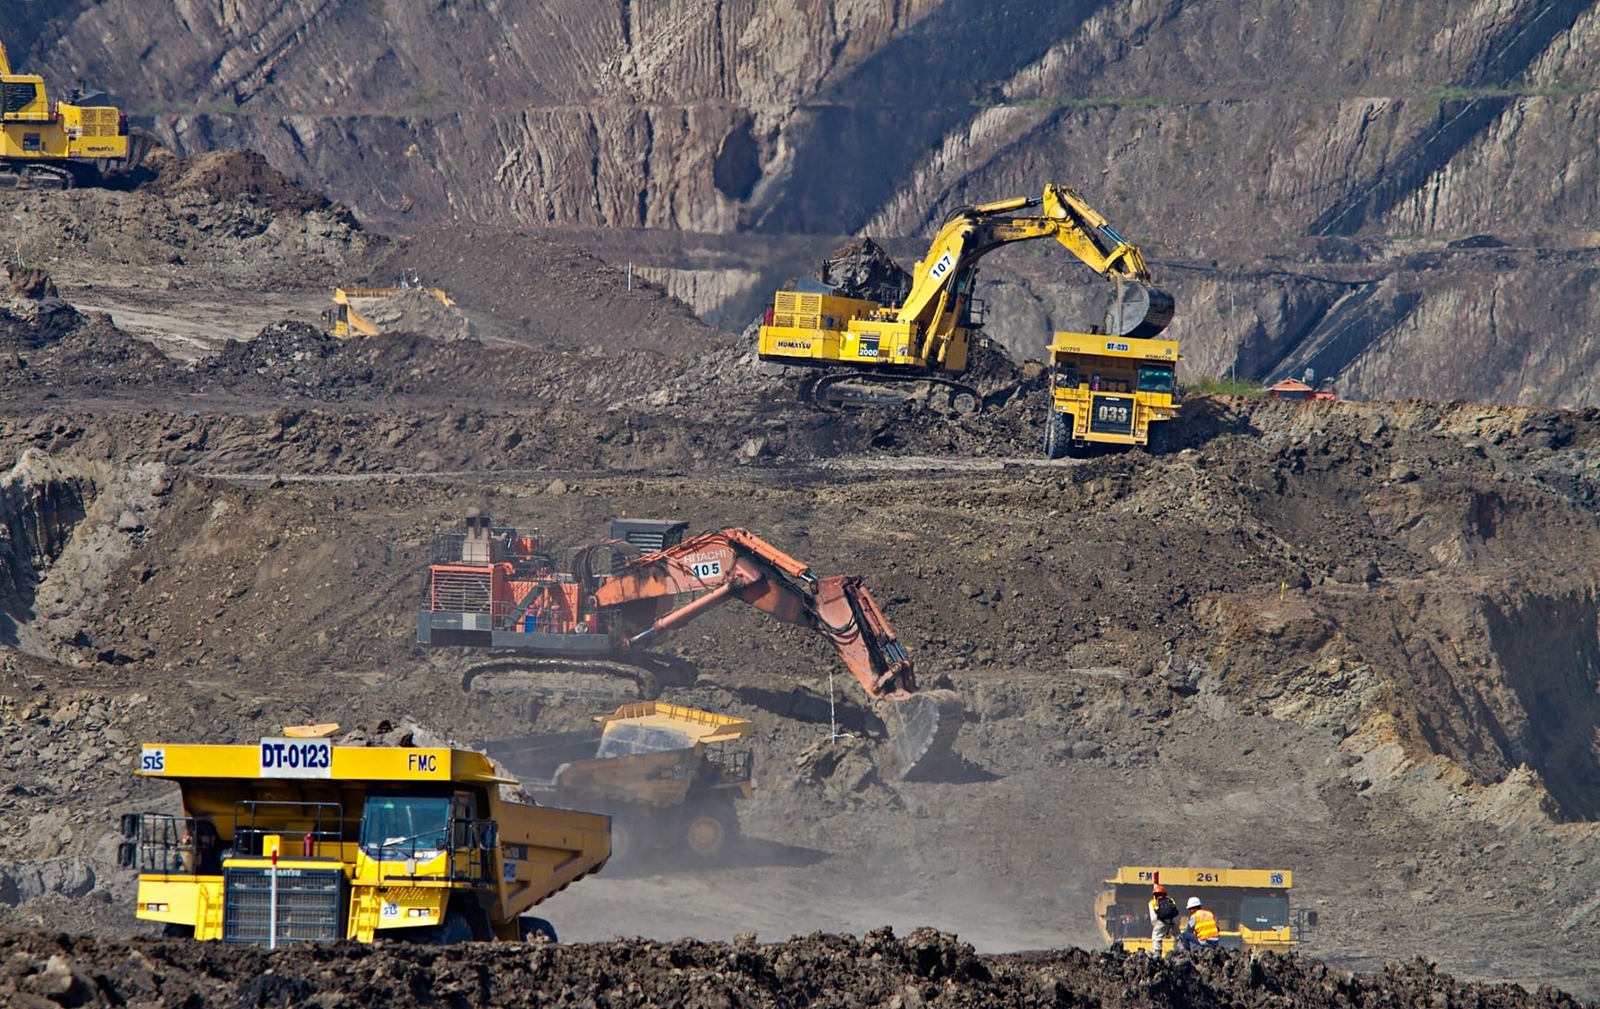 Photo Credit: Kementerian Energi dan Sumber Daya Mineral (ESDM) mengimbau Gubernur di seluruh Indonesia untuk tidak lagi menerbitkan izin pertambangan mineral dan batu bara (minerba) baru. Hal ini terkait dengan diundangkannya Undang-Undang Nomor 3 Tahun 2020 tentang Perubahan Atas Undang-Undang Nomor 4 Tahun 2009 tentang Pertambangan Mineral dan Batubara (UU Minerba) pada tanggal 10 Juni 2020 dan dalam rangka melaksanakan ketentuan Pasal 173C UU No.3. / 2020 (UU Pertambangan Indonesia baru). REUTERS